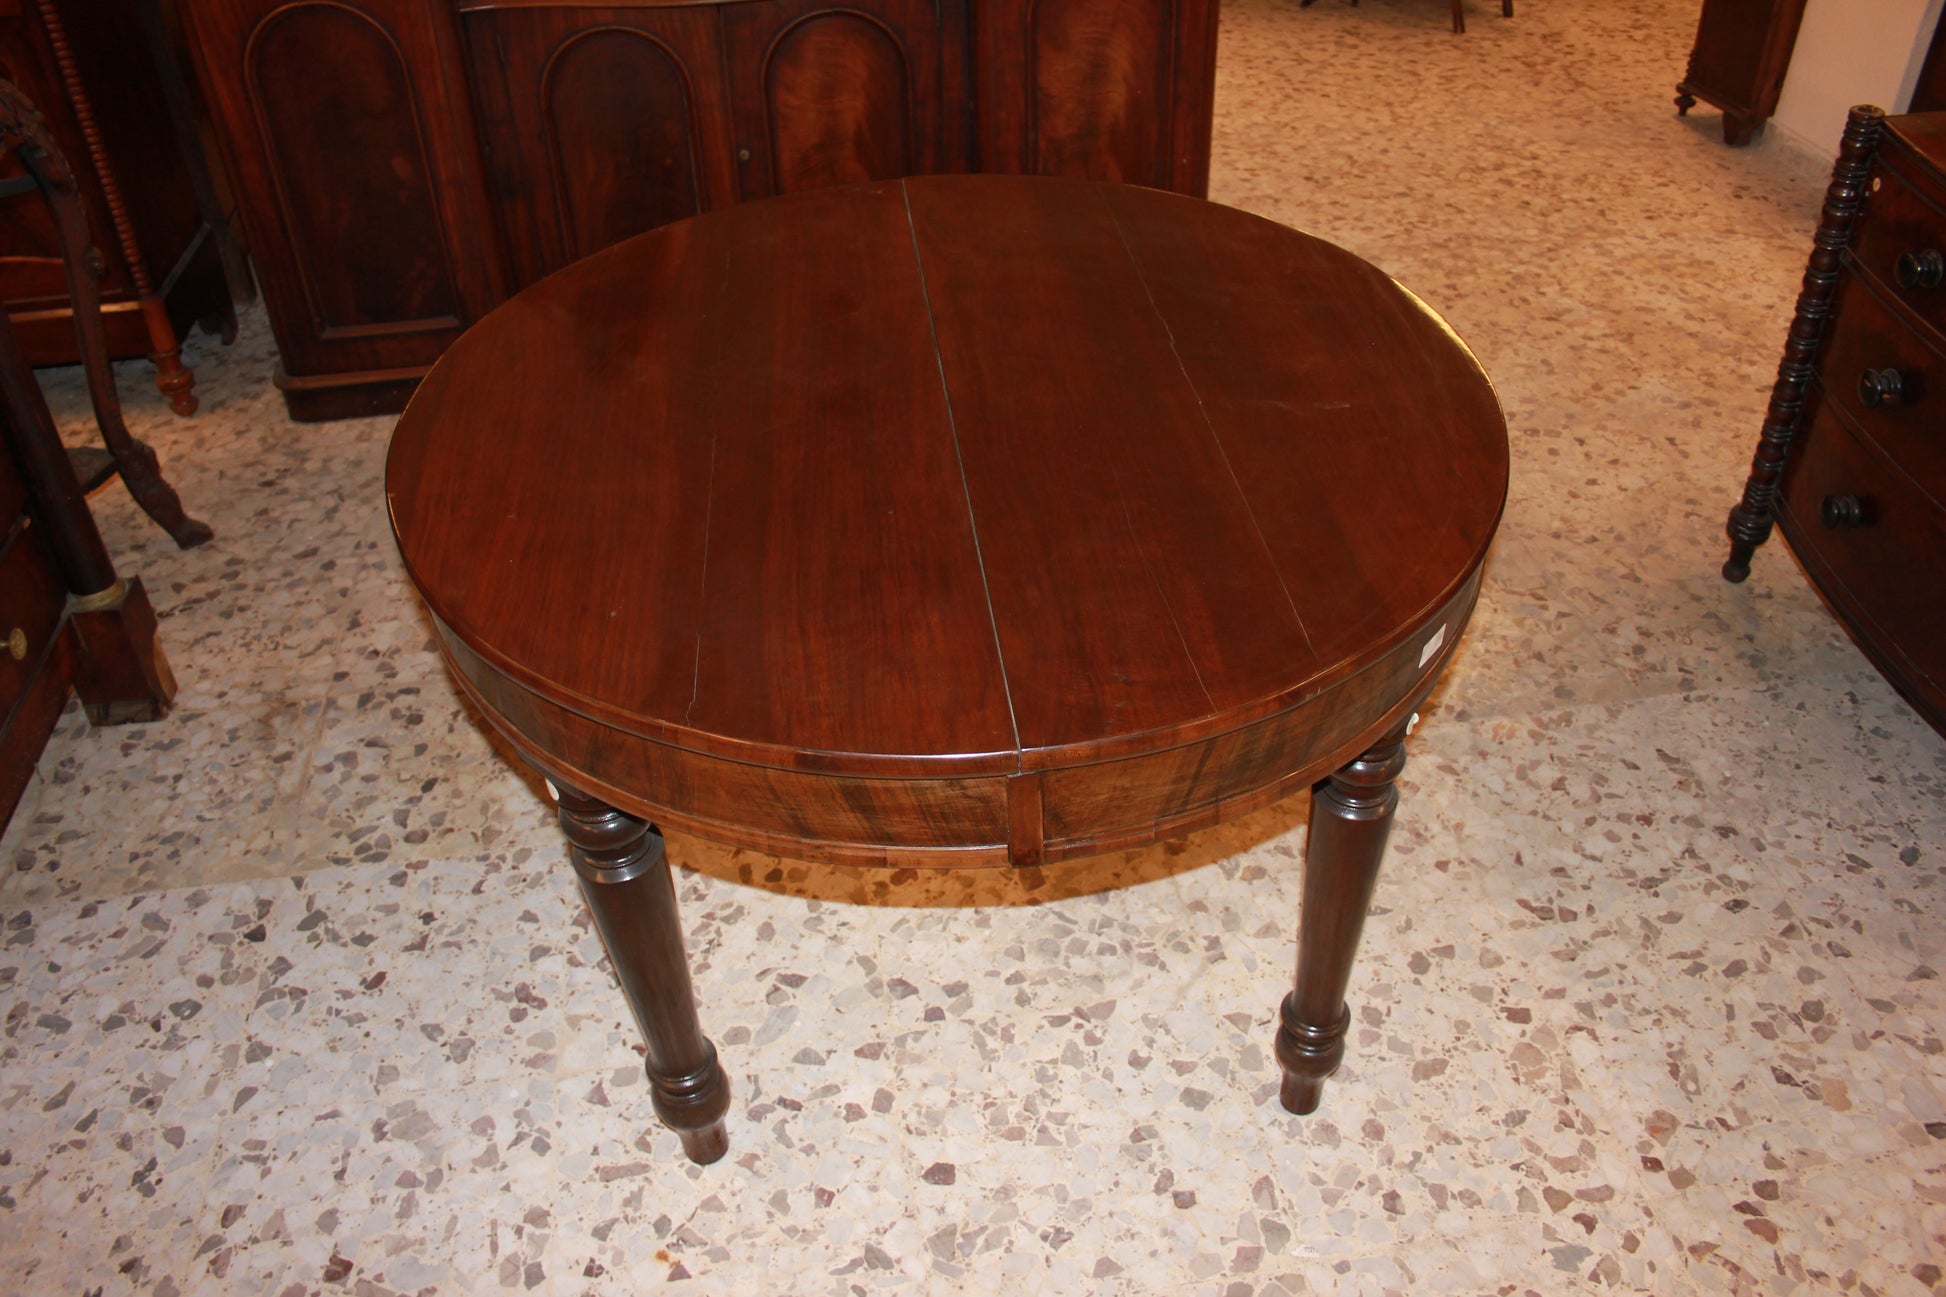 Tavolo circolare allungabile in legno di noce fiammato stile Luigi Filippo del 1800